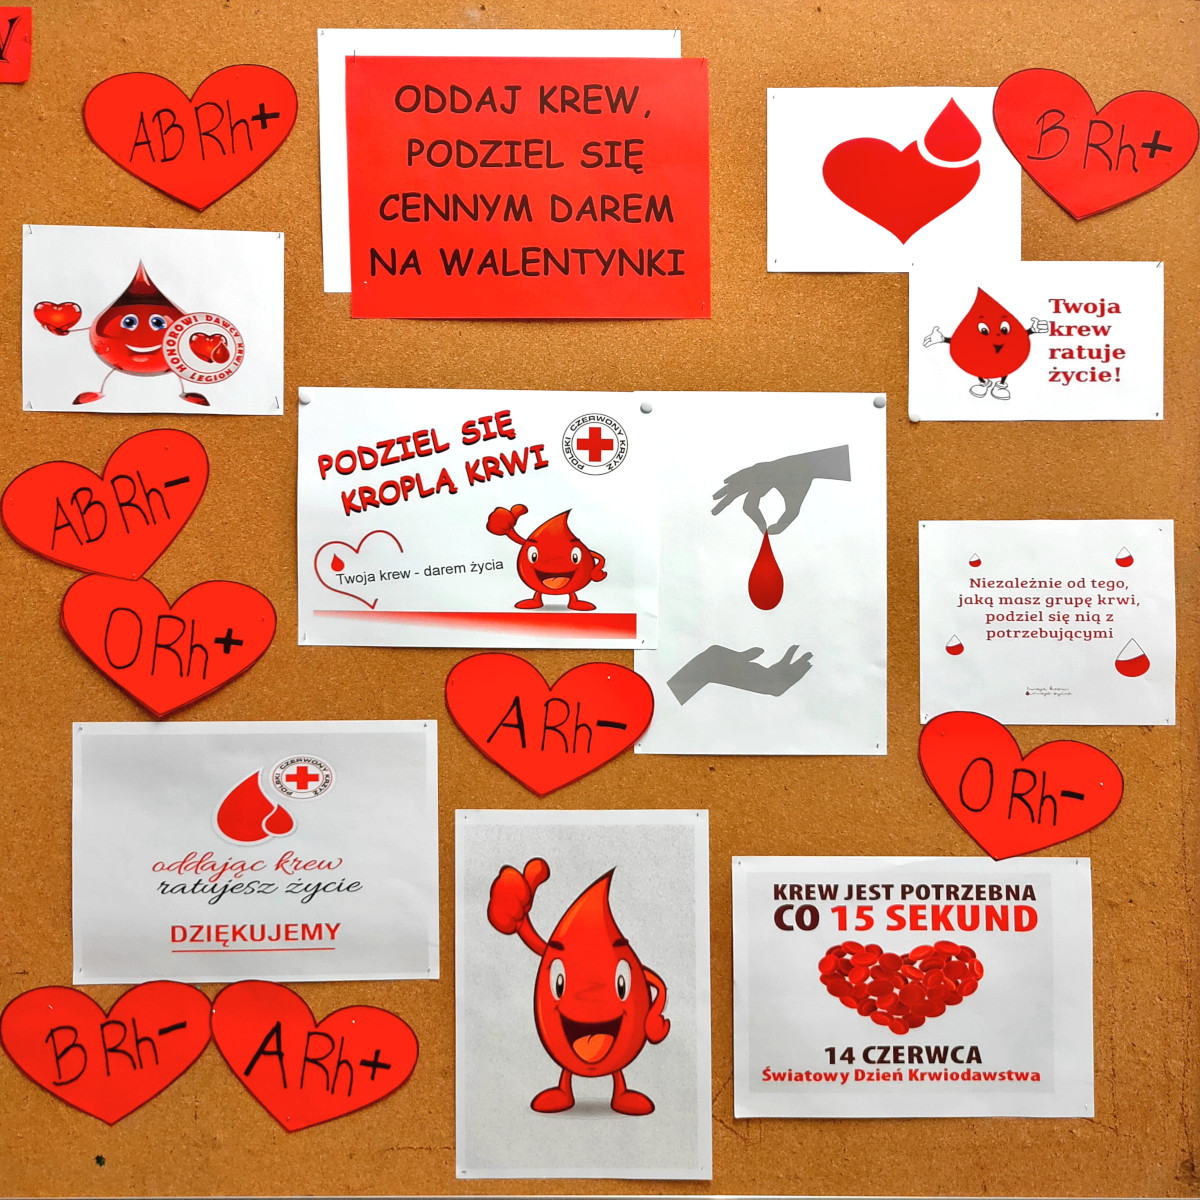 Wasilków: Oddaj krew, podziel się cennym darem na Walentynki